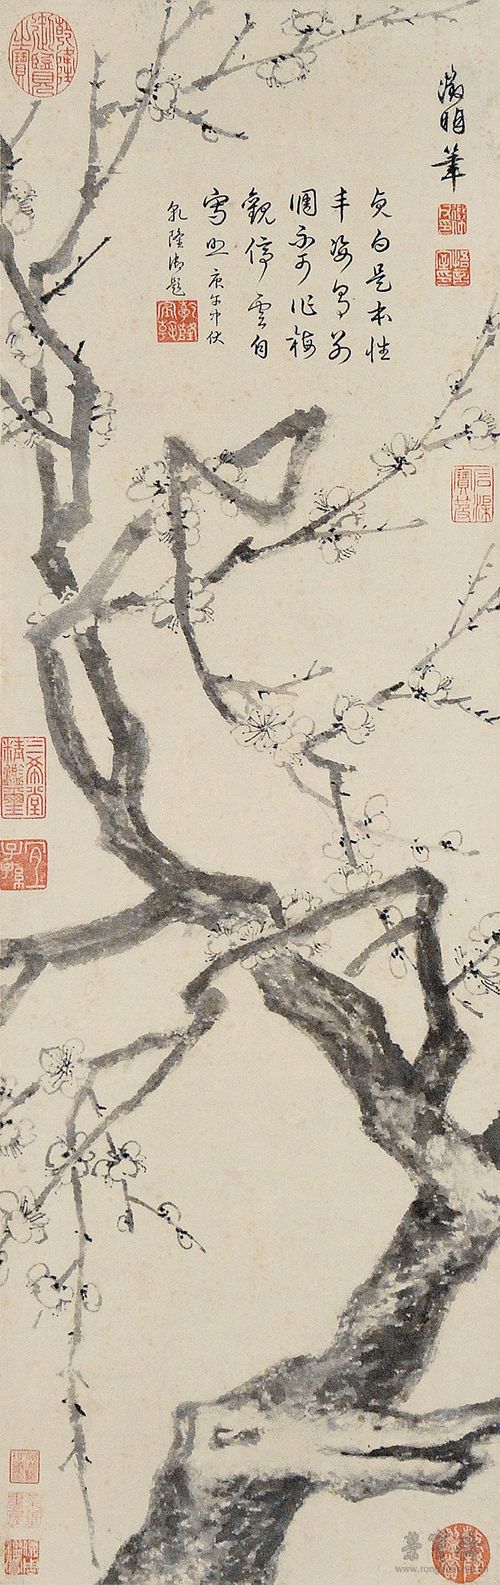 文徵明 冰姿倩影图 77cmx25cm 南京博物院藏